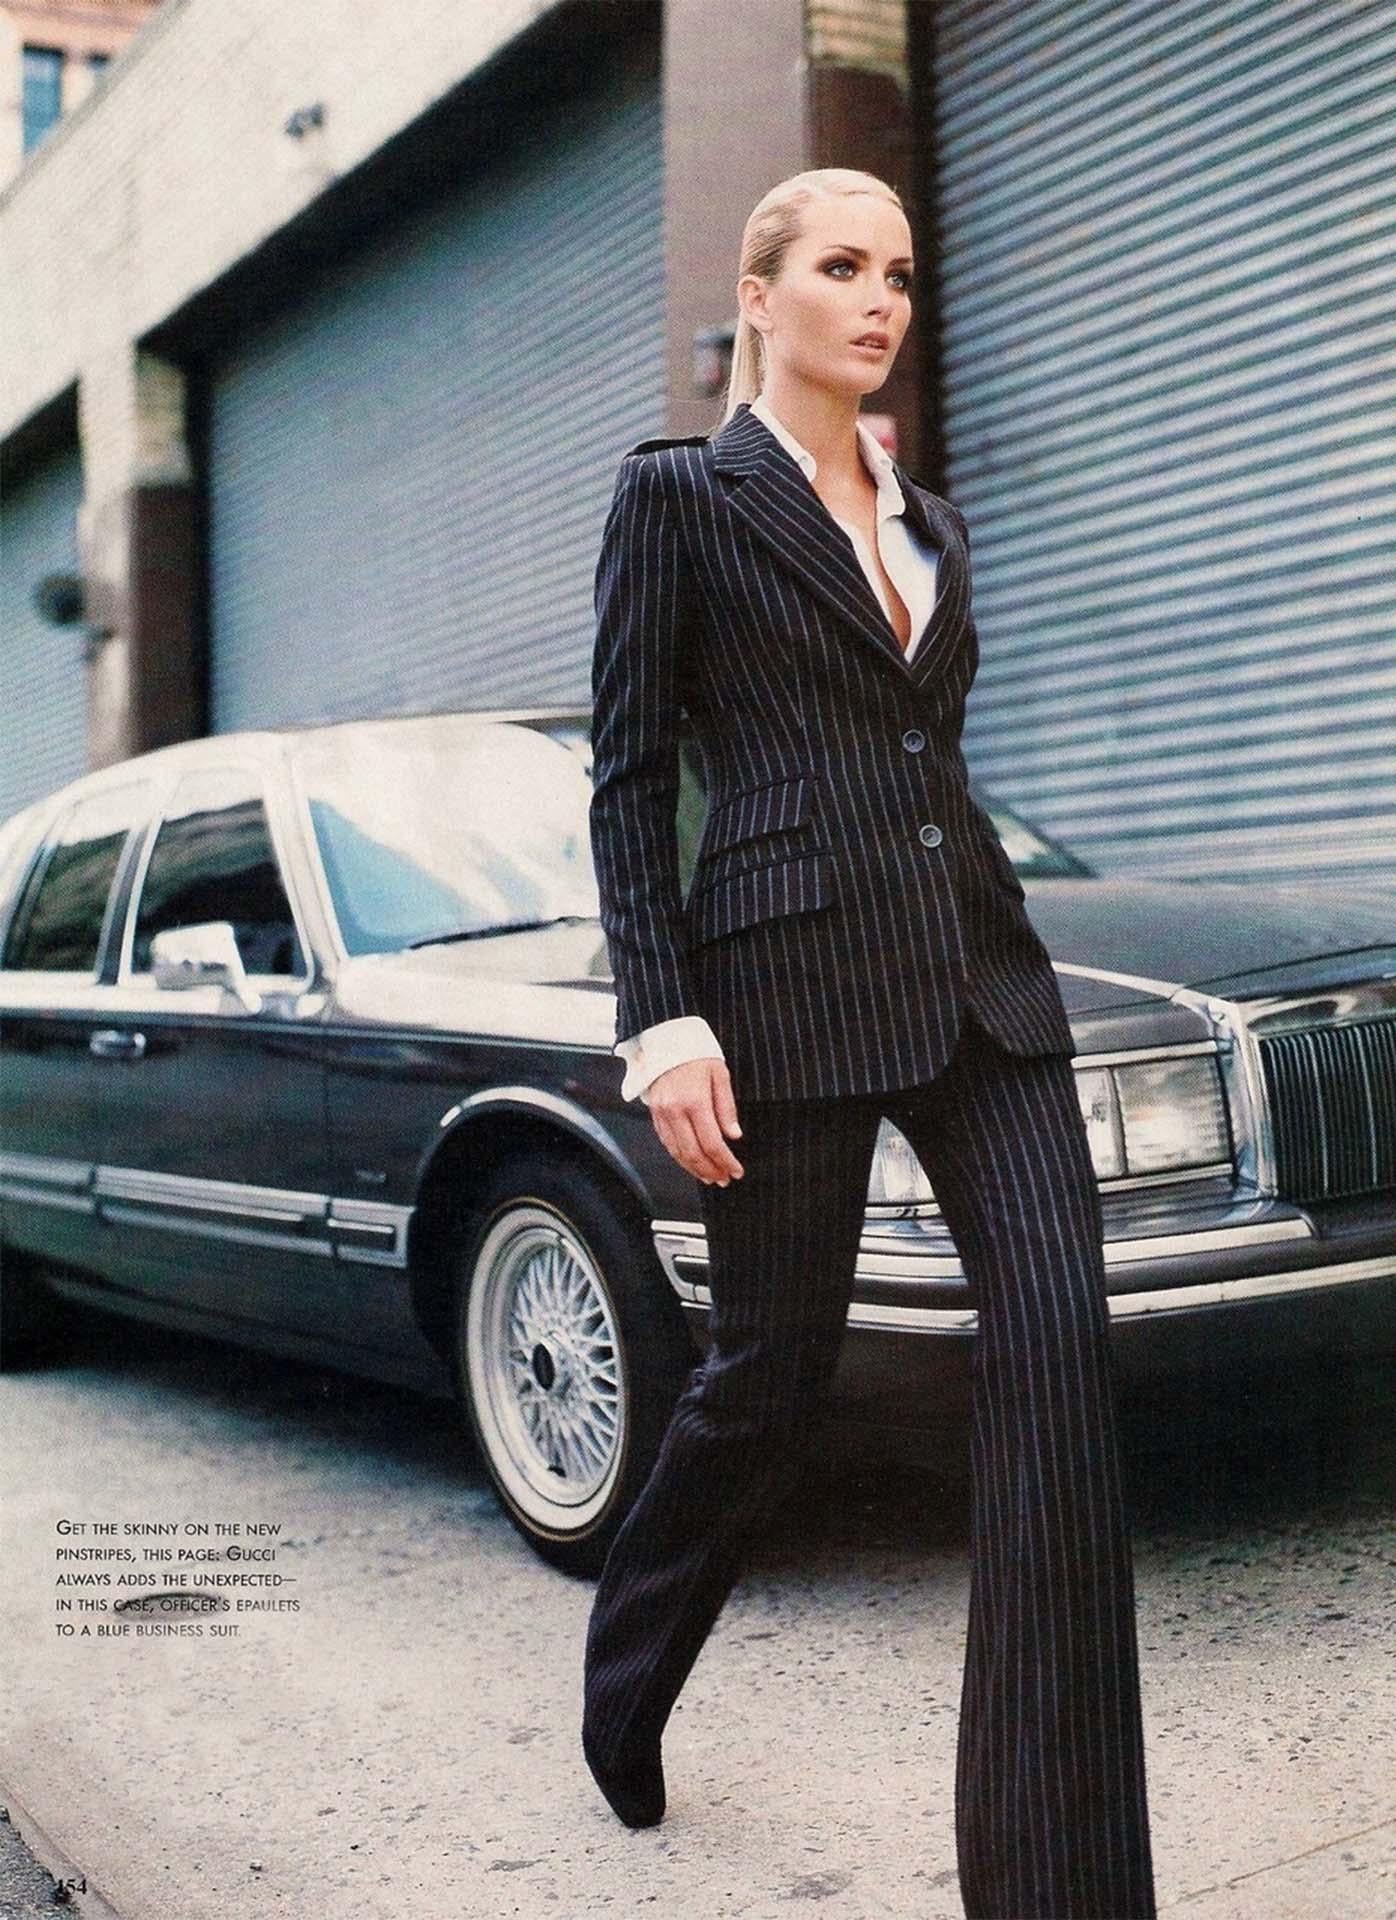 Présentation d'un fabuleux costume Gucci à rayures noires conçu par Tom Ford. Issue de la collection automne-hiver 1996, cette fabuleuse combinaison a fait ses débuts sur le défilé de la saison dans le cadre du Look 16, portée par Kylie Bax.